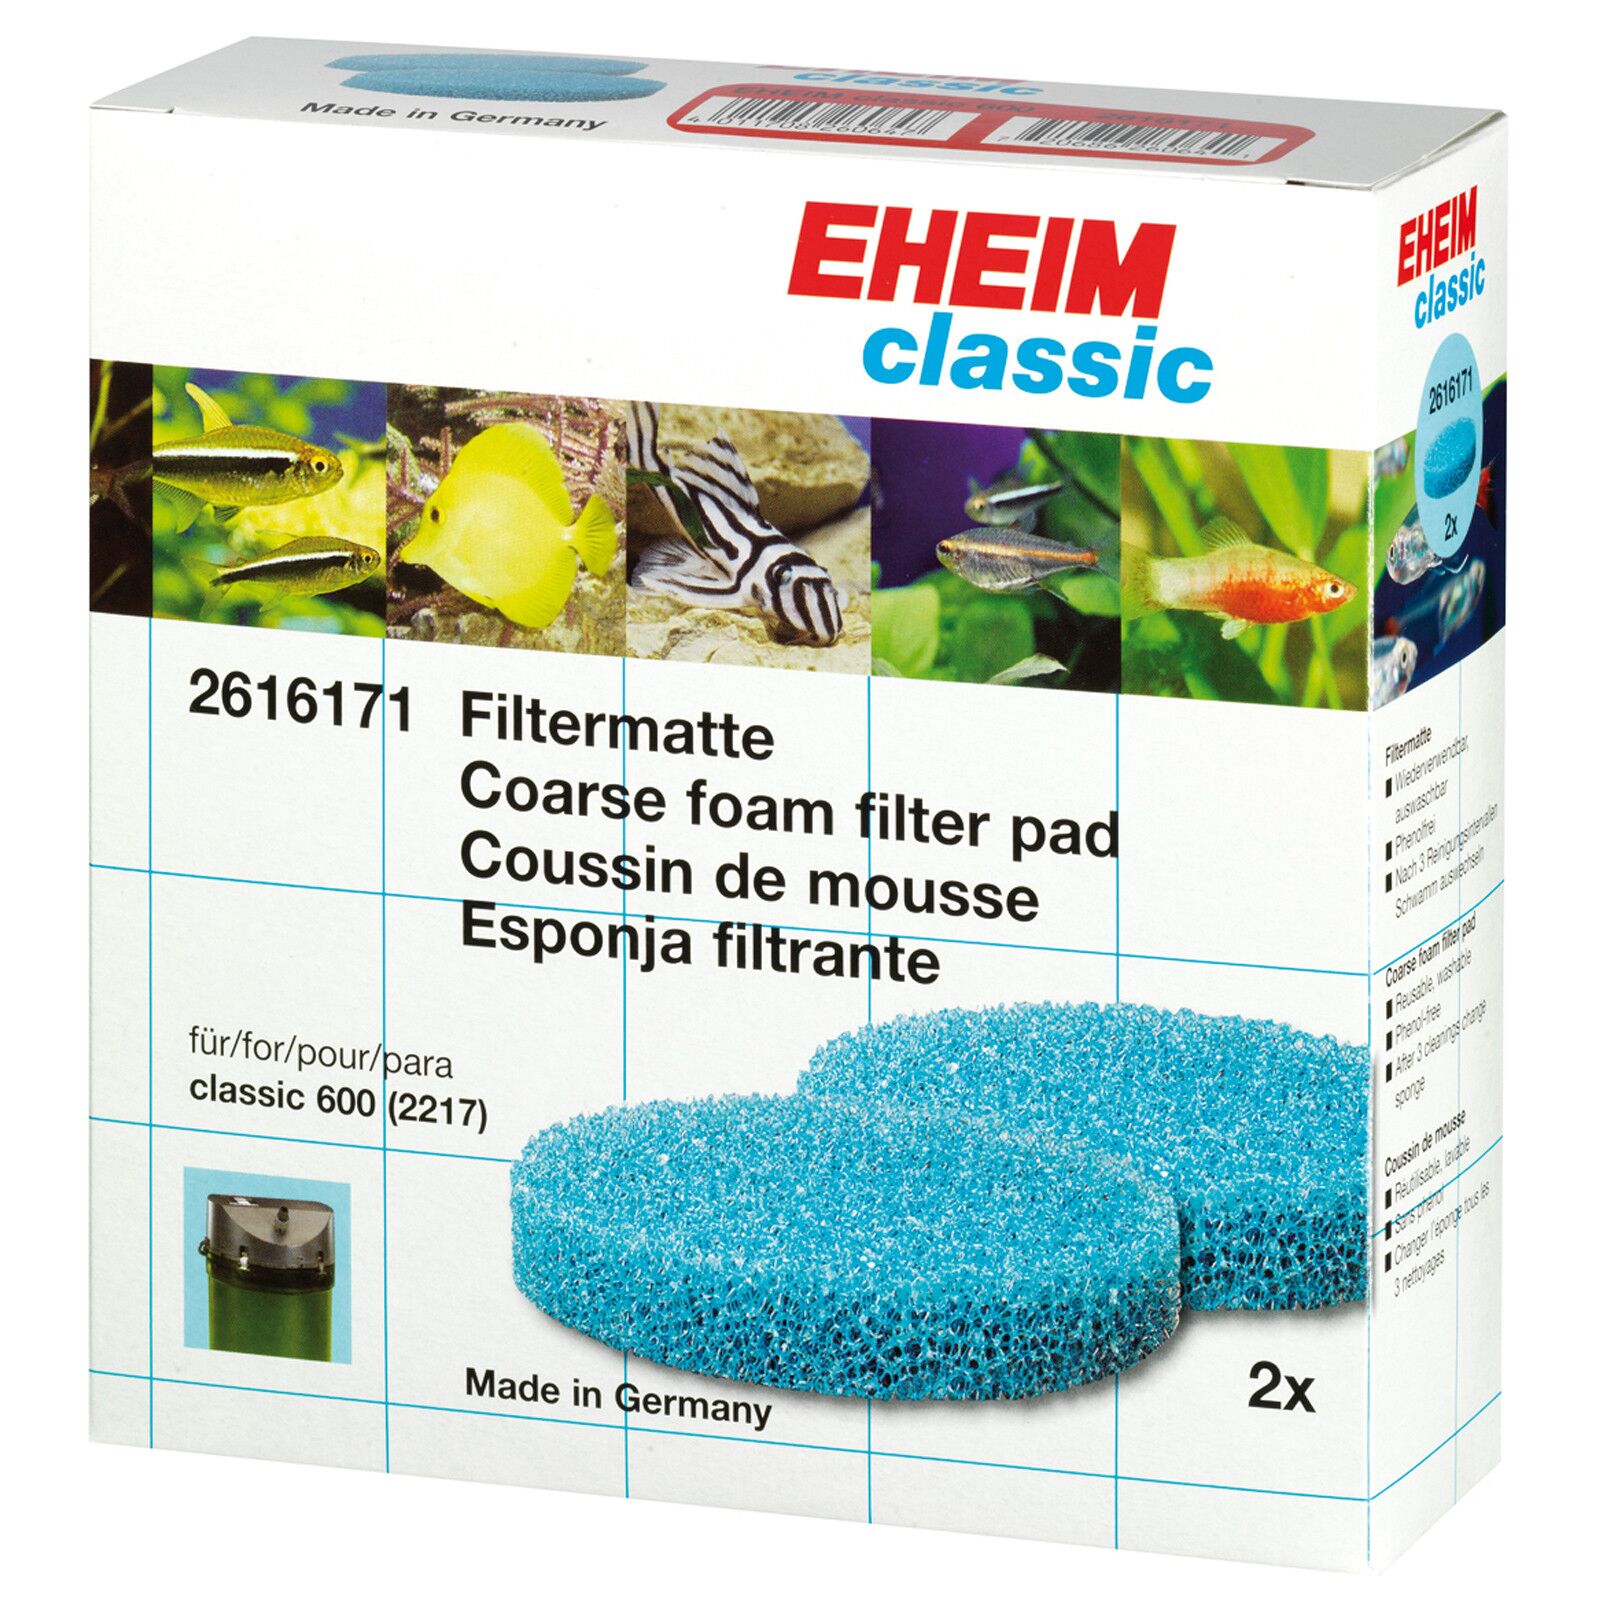 EHEIM filter pads